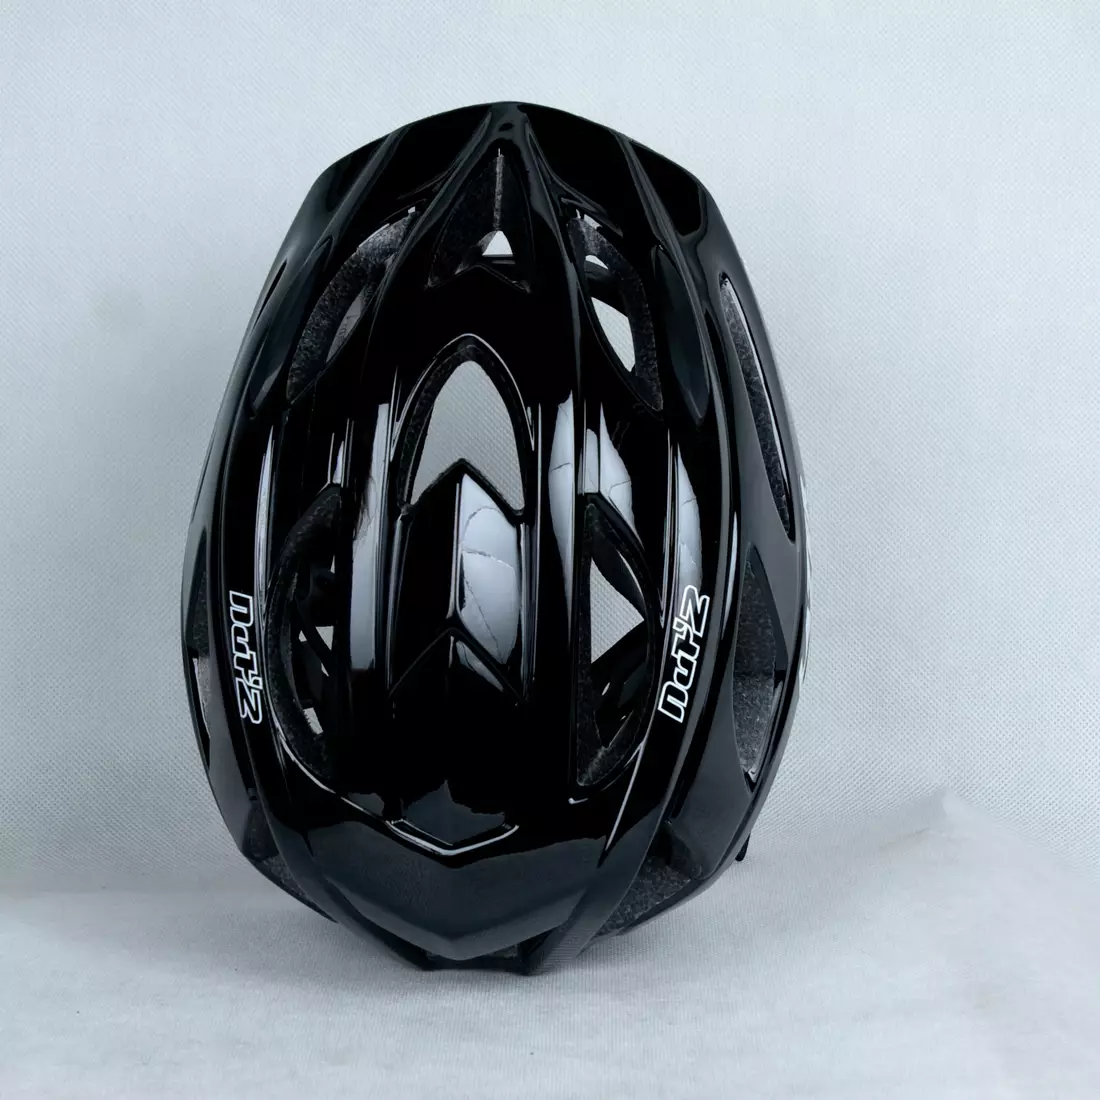 LAZER - children's/junior helmet LAZER NUT'Z - black